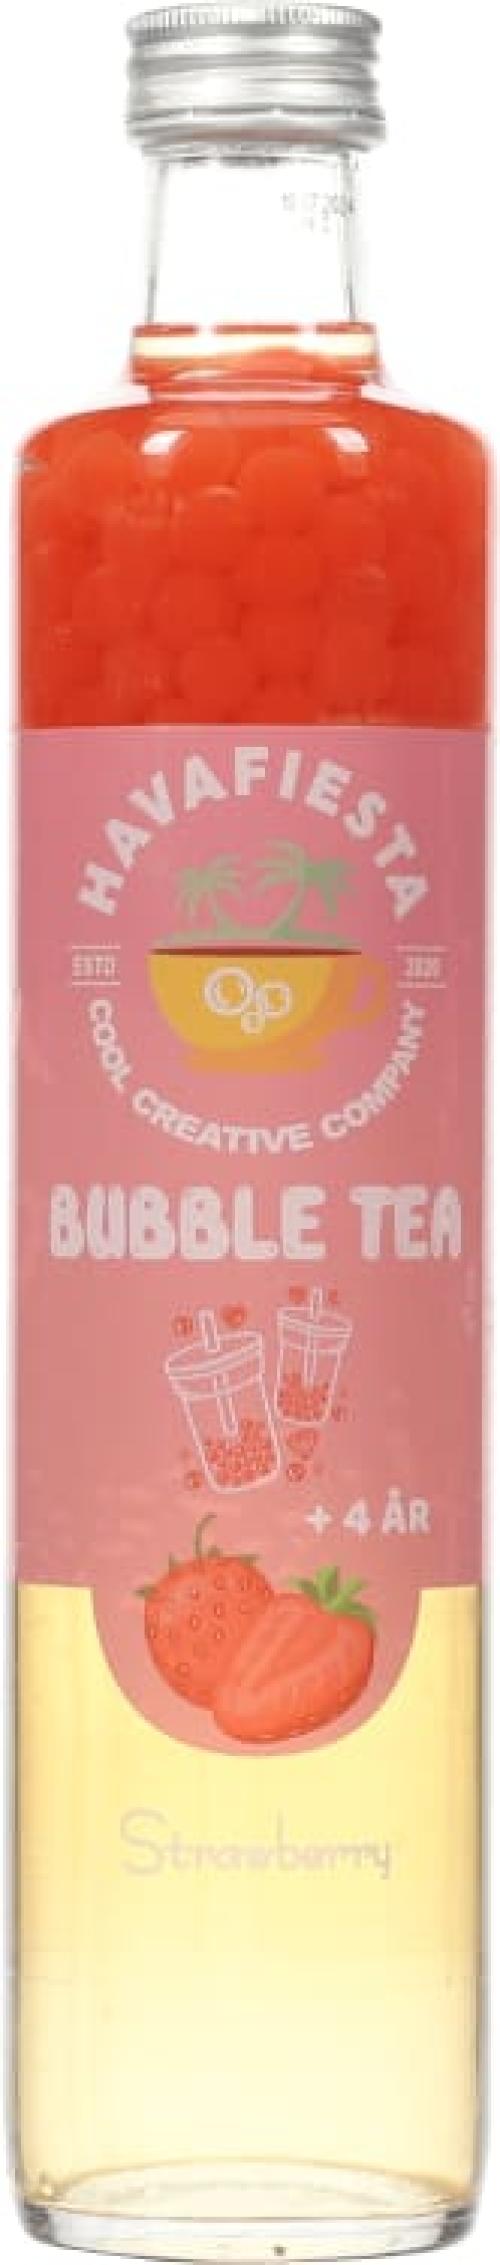 Bubble Tea Strawberry 0,5L Havafiesta